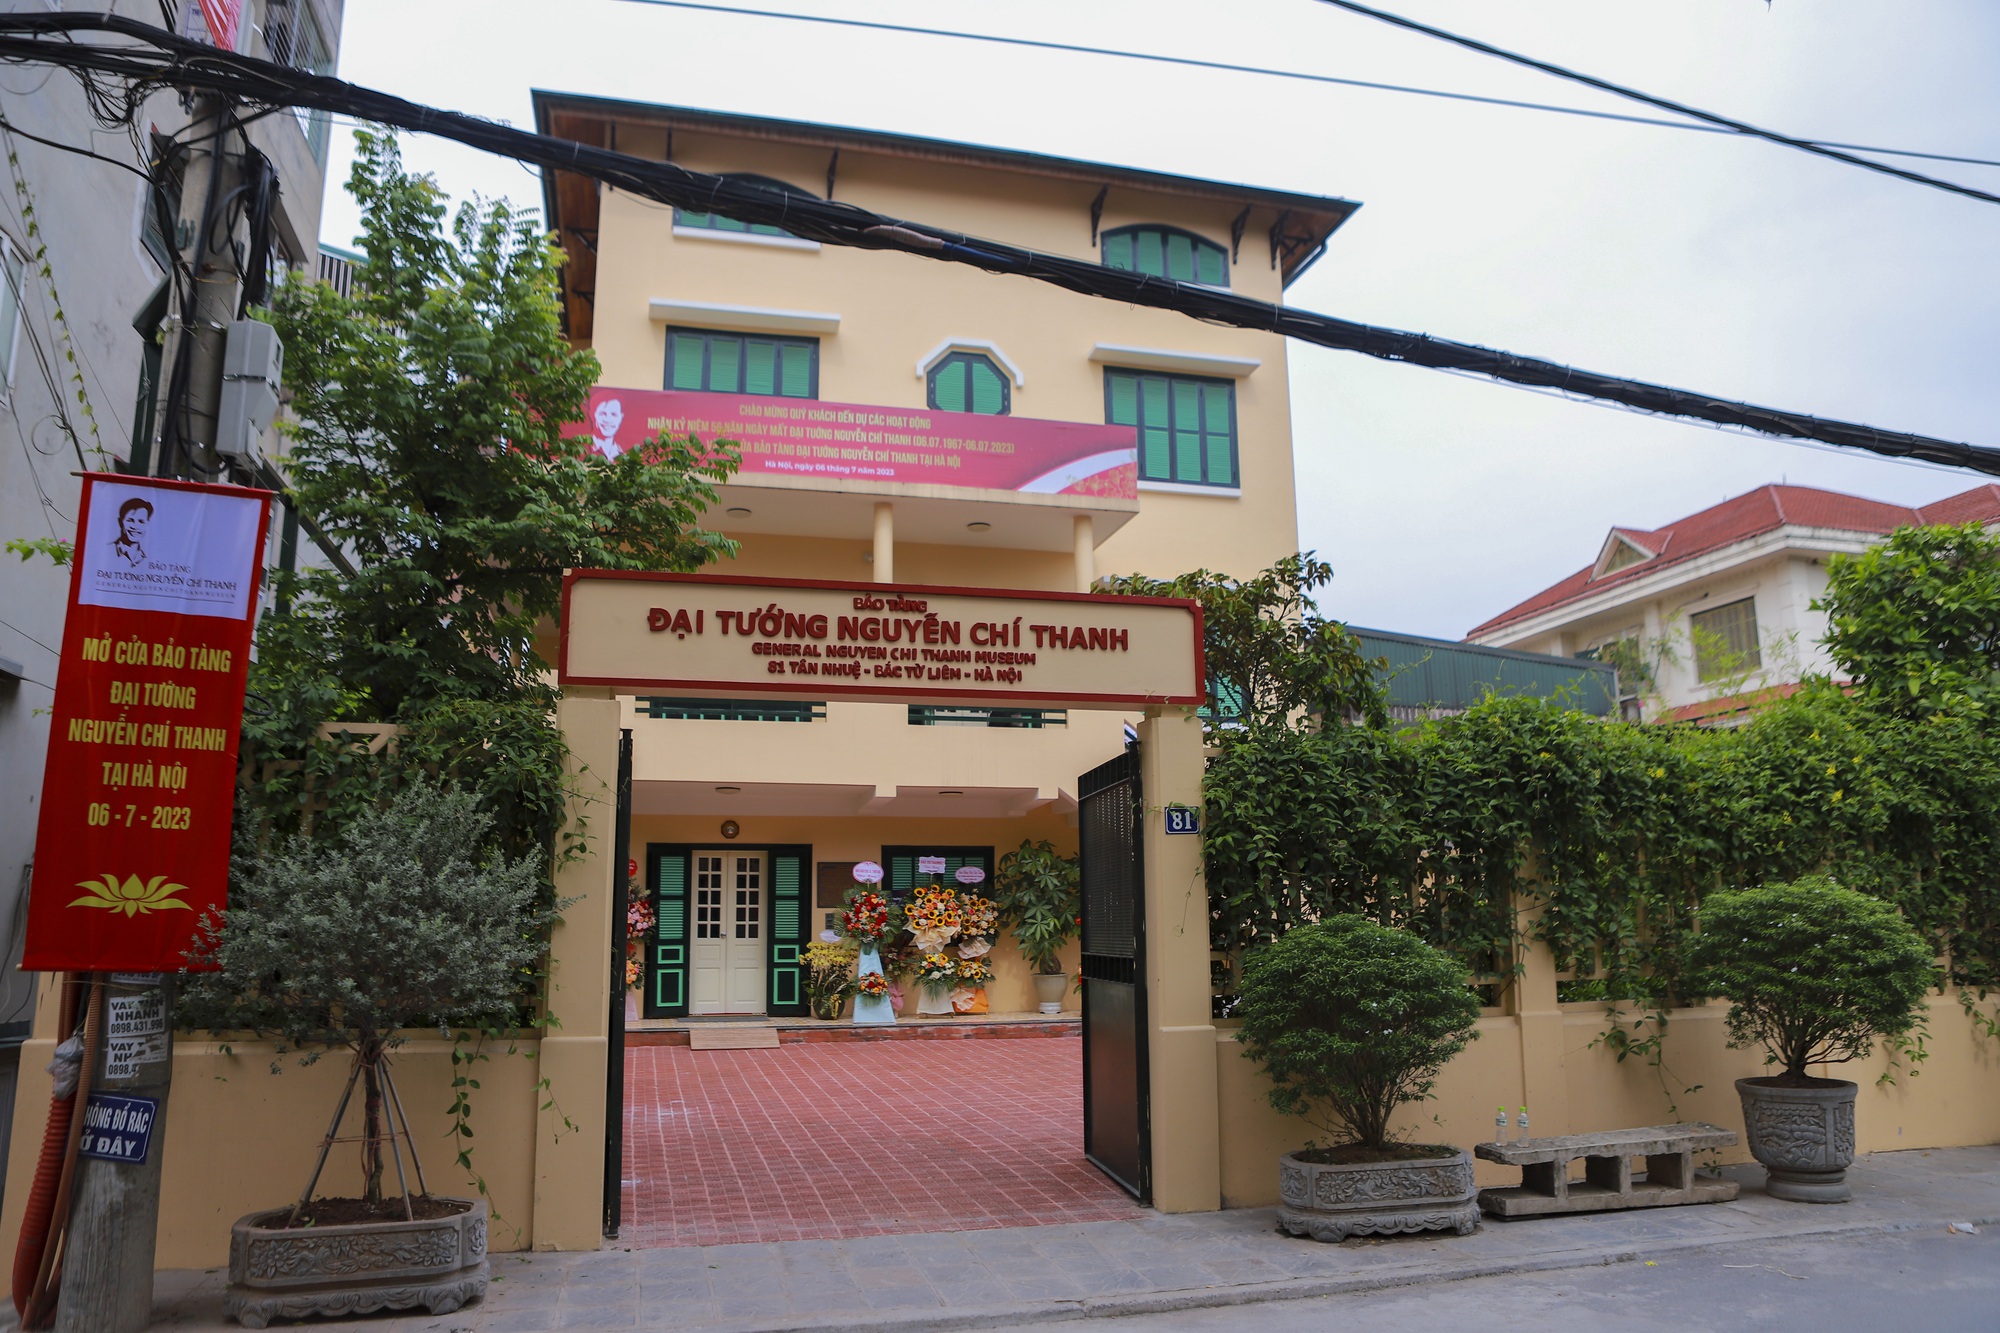 Bảo tàng Đại tướng Nguyễn Chí Thanh tại Hà Nội mở cửa đón khách tham quan thử nghiệm - Ảnh 1.